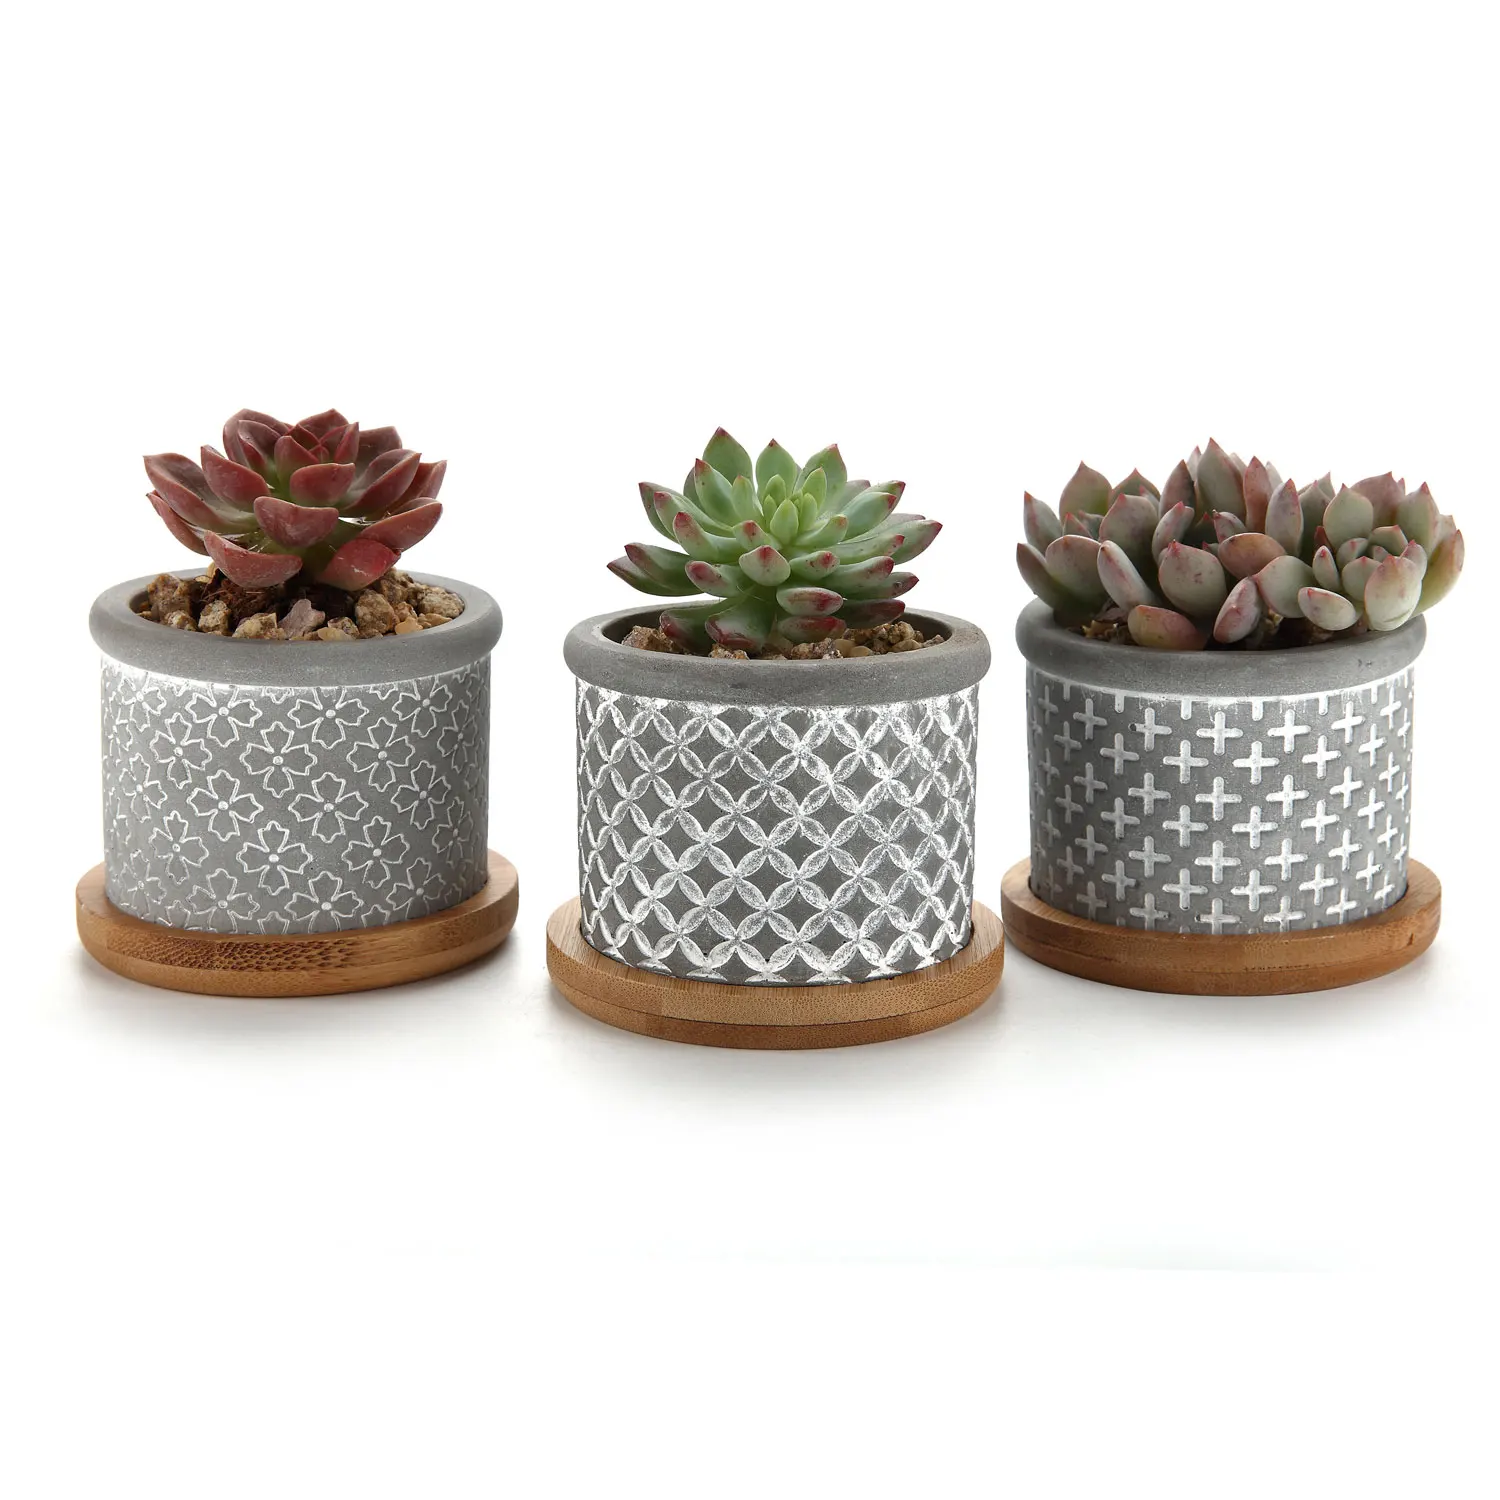 T4U Cement Succulent Planter Pot Grey Set Small Concrete Cactus Plant